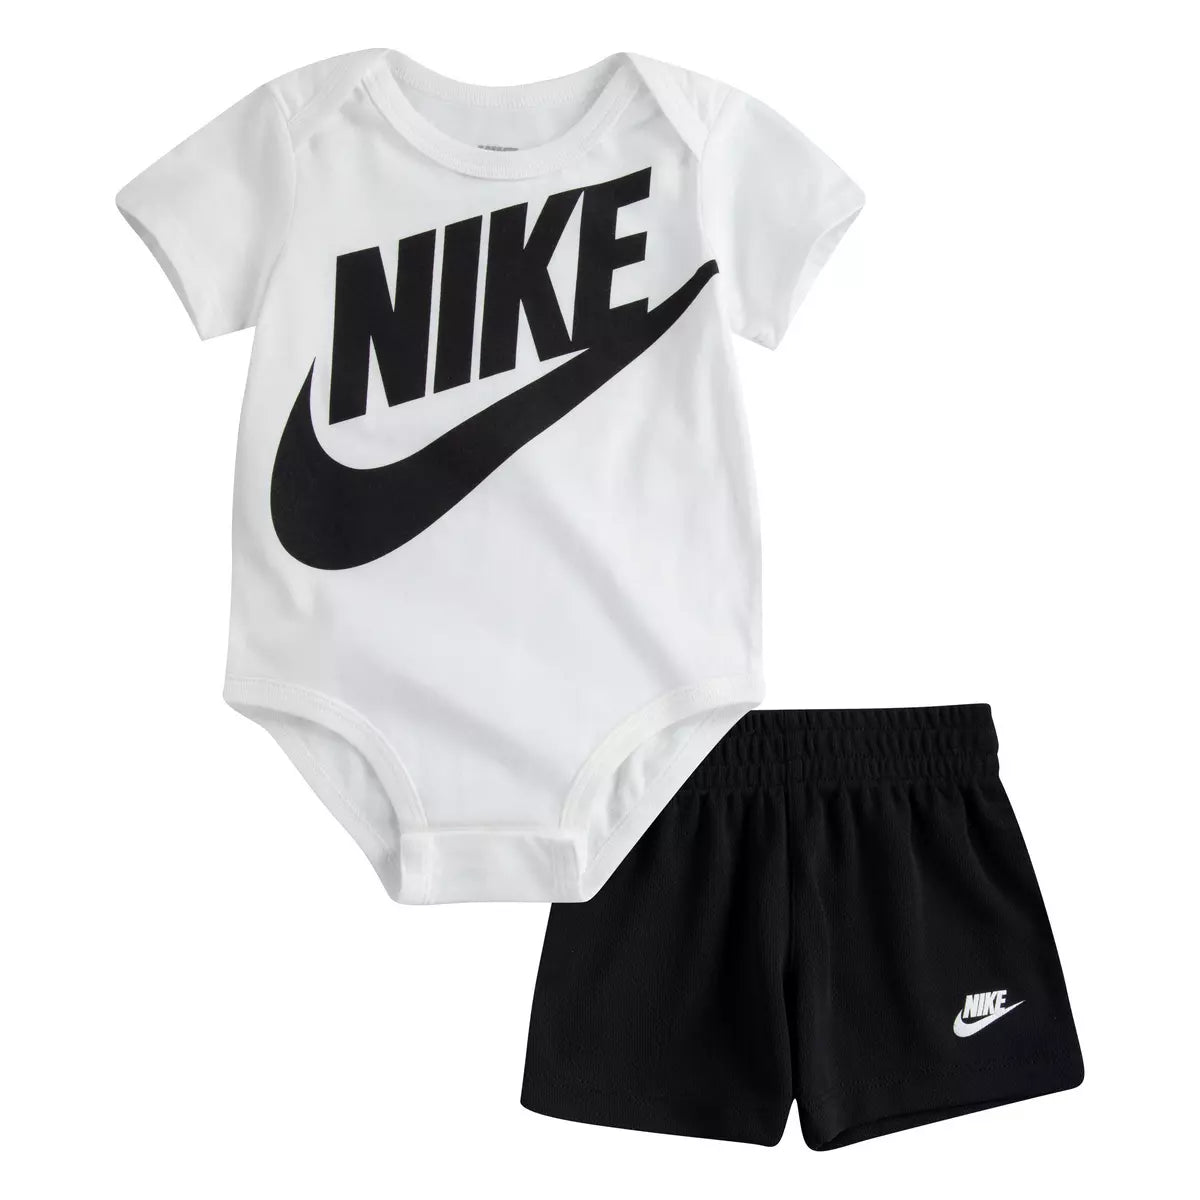 Nike ensemble bébé body et short Futura white/black